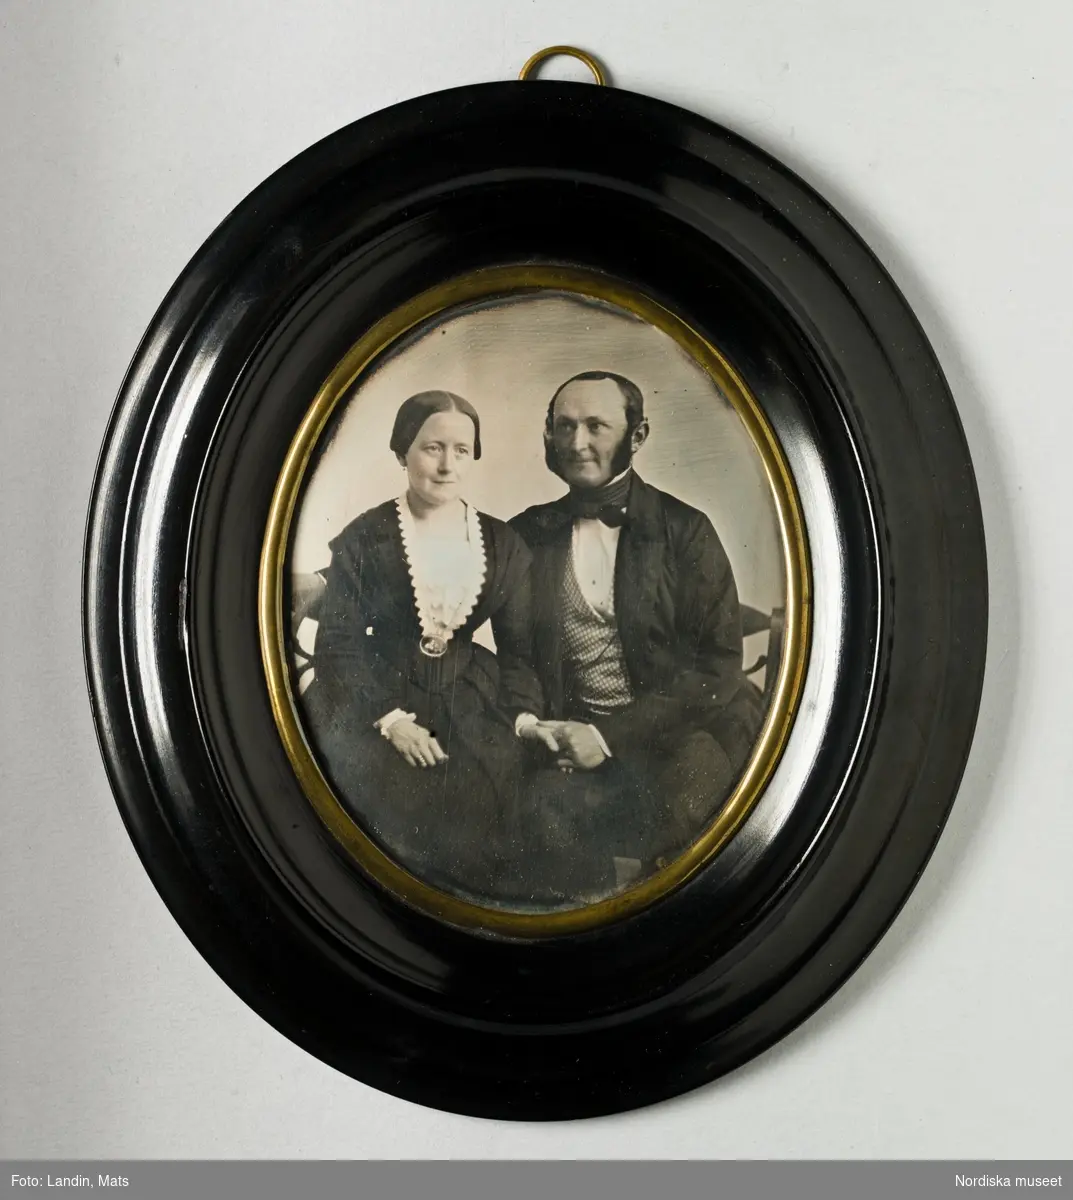 Porträtt av par, föreställer Adolf Sebastian von Krusenstjerna, kaptenlöjtnant (1817–1870) och hans hustru Fredrika Charlotta Vougt (1816–1901). Paret sitter i en soffa och håller varandra i handen. På baksidan påklistrad blå etikett med svart text: "Daguerreotyp af M. UNNA, Porträtt-Målare i Götheborg". Oval dagerrotyp / daguerreotyp med profilerad svart träram med gulmetallvulst närmast dagerrotypen, ca. 1855.
Nordiska museet inv.nr 307611.
-
Portrait of Adolf Sebastian von Krusenstjerna (1817–1870) and his wife Fredrika Charlotta Vougt (1816–1901). Quarter-plate daguerreotype in oval frame by Moritz Unna, c. 1855.